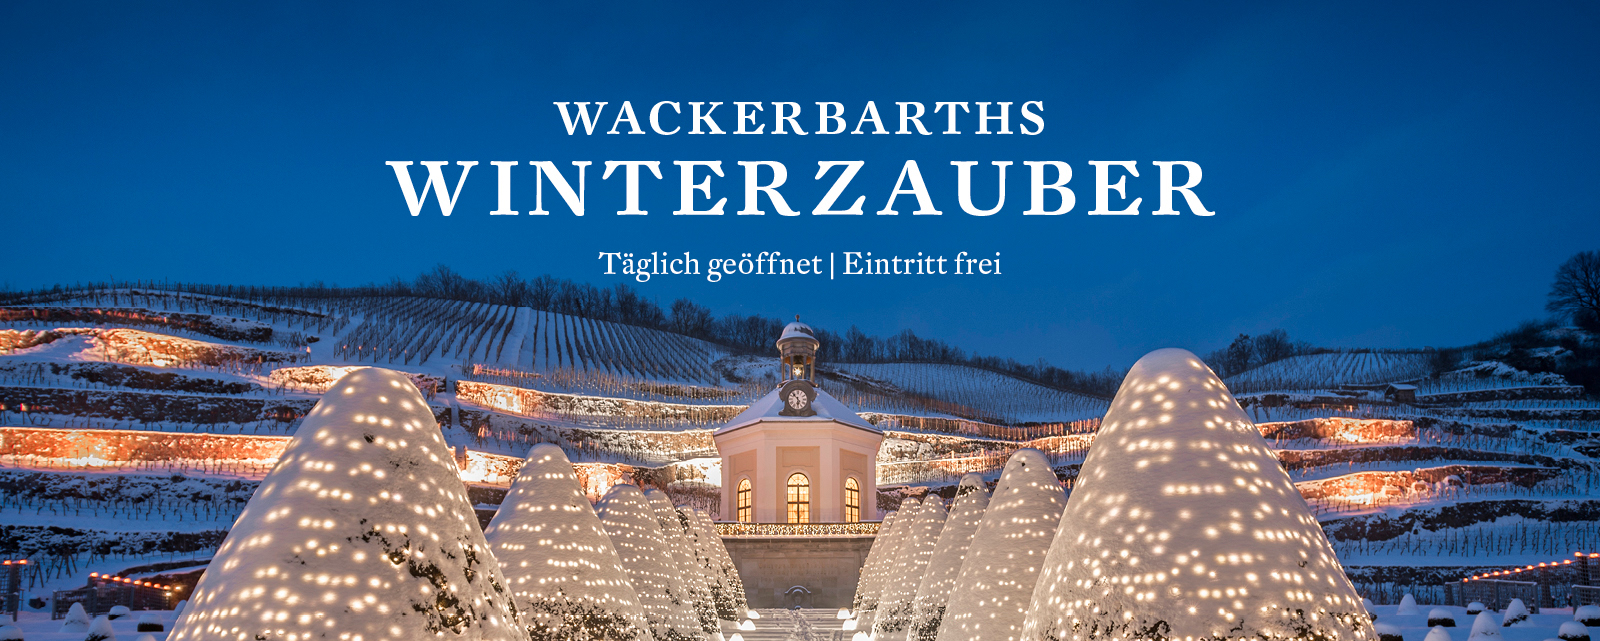 Wackerbarths Winterzauber